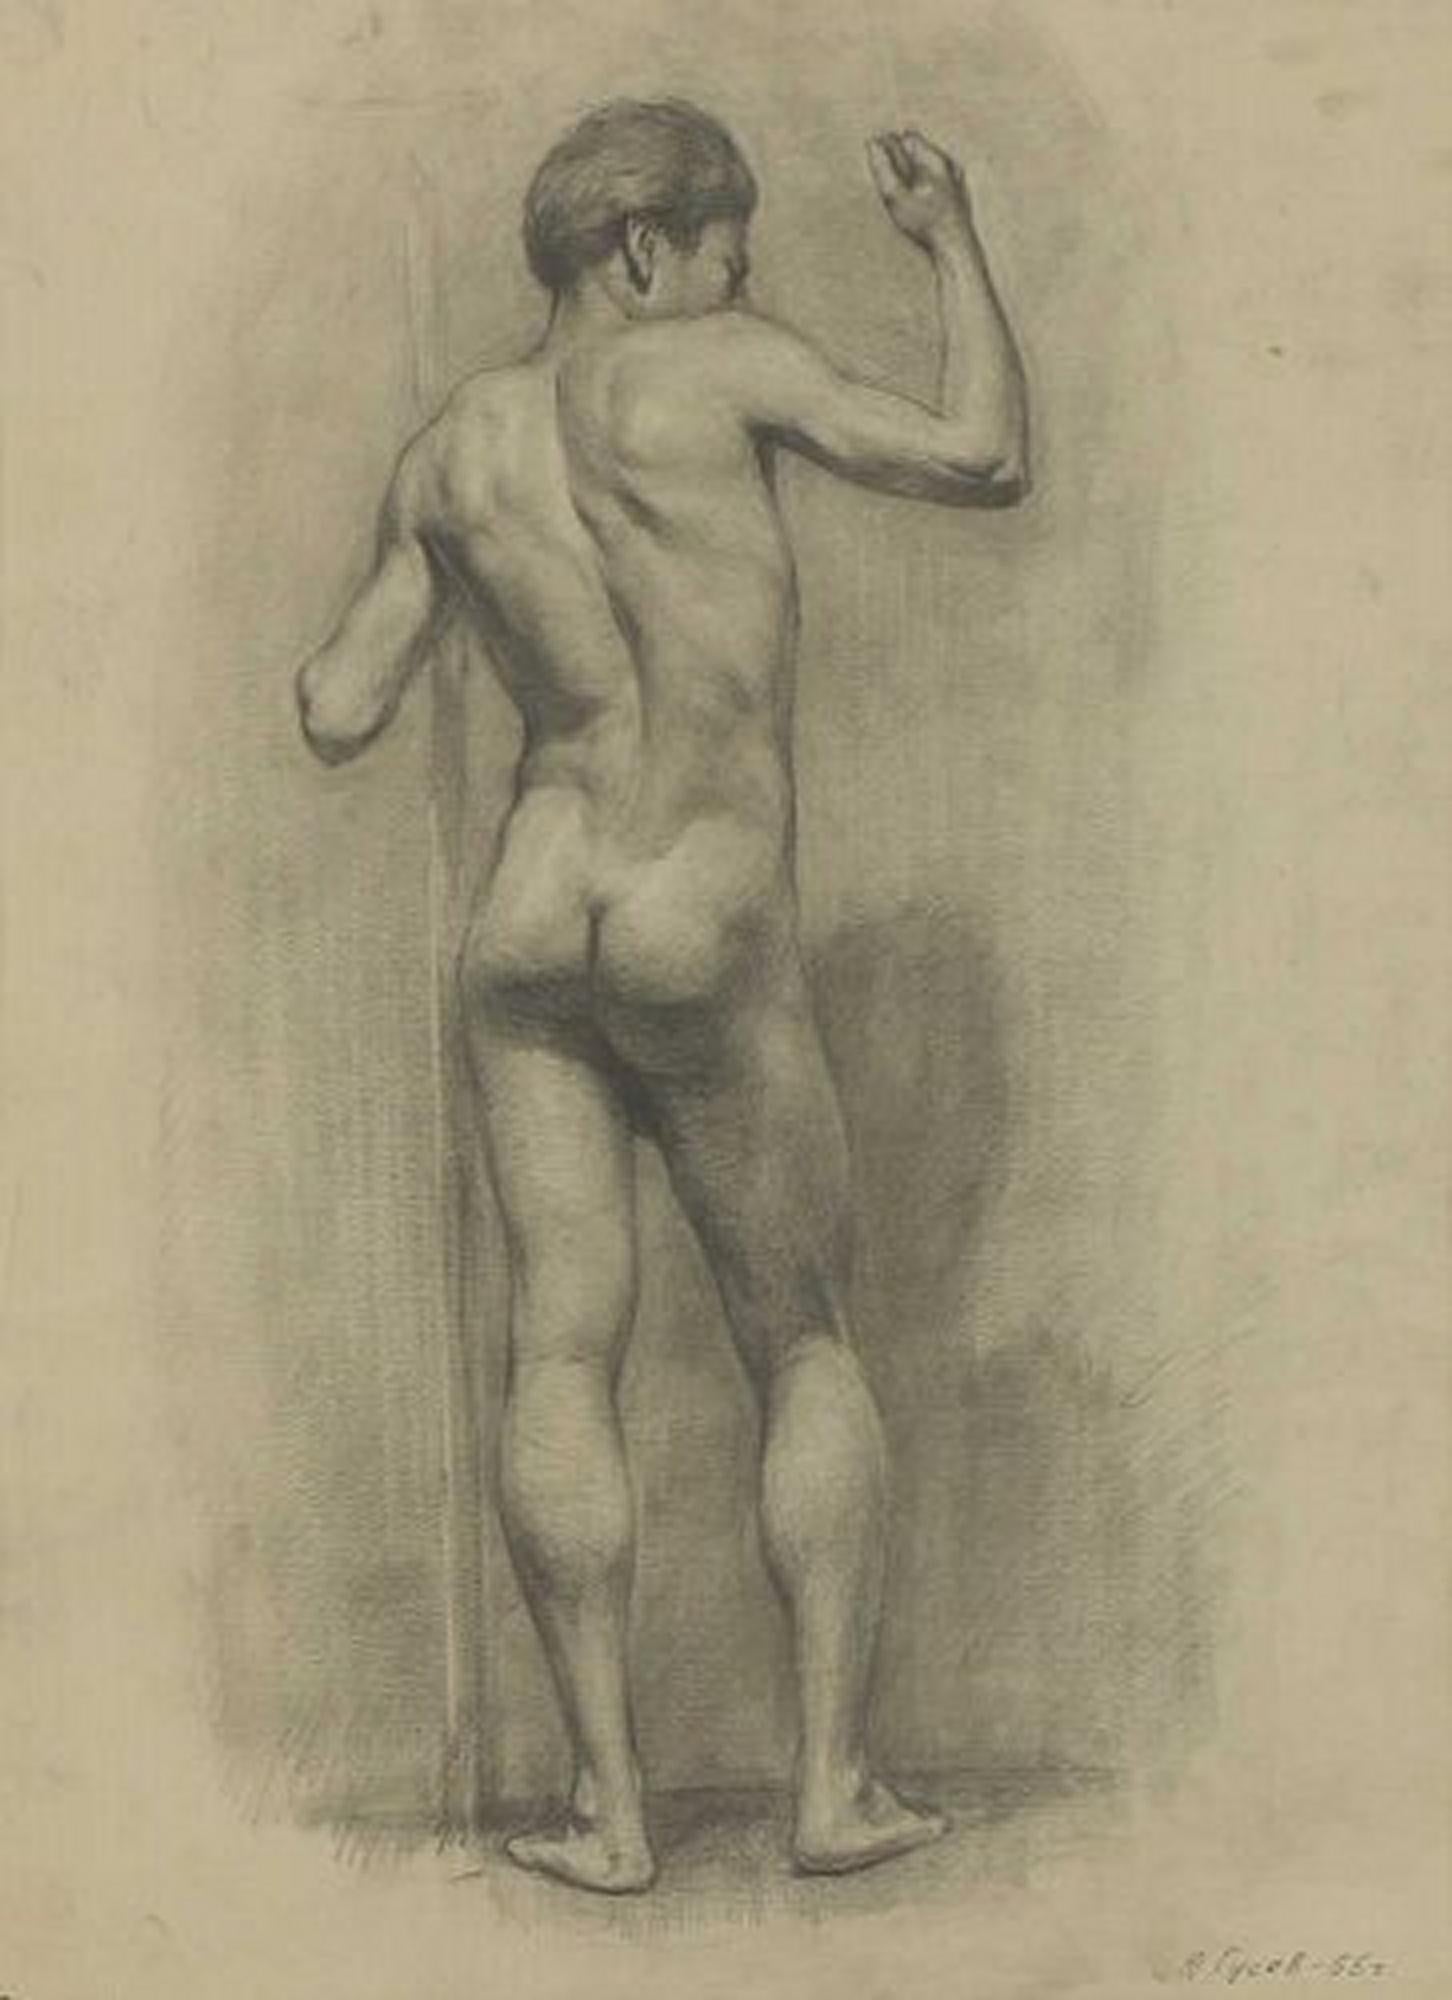 Yuri Gusev (russe, 1928-2012) Jeune nu masculin debout, signé et daté '55 à droite, crayon.
Mesures : 61 × 45cm.

Yuri Gusev est né à Moscou en 1928. A étudié à l'école intermédiaire d'art de Moscou jusqu'en 1947. Il est ensuite diplômé de